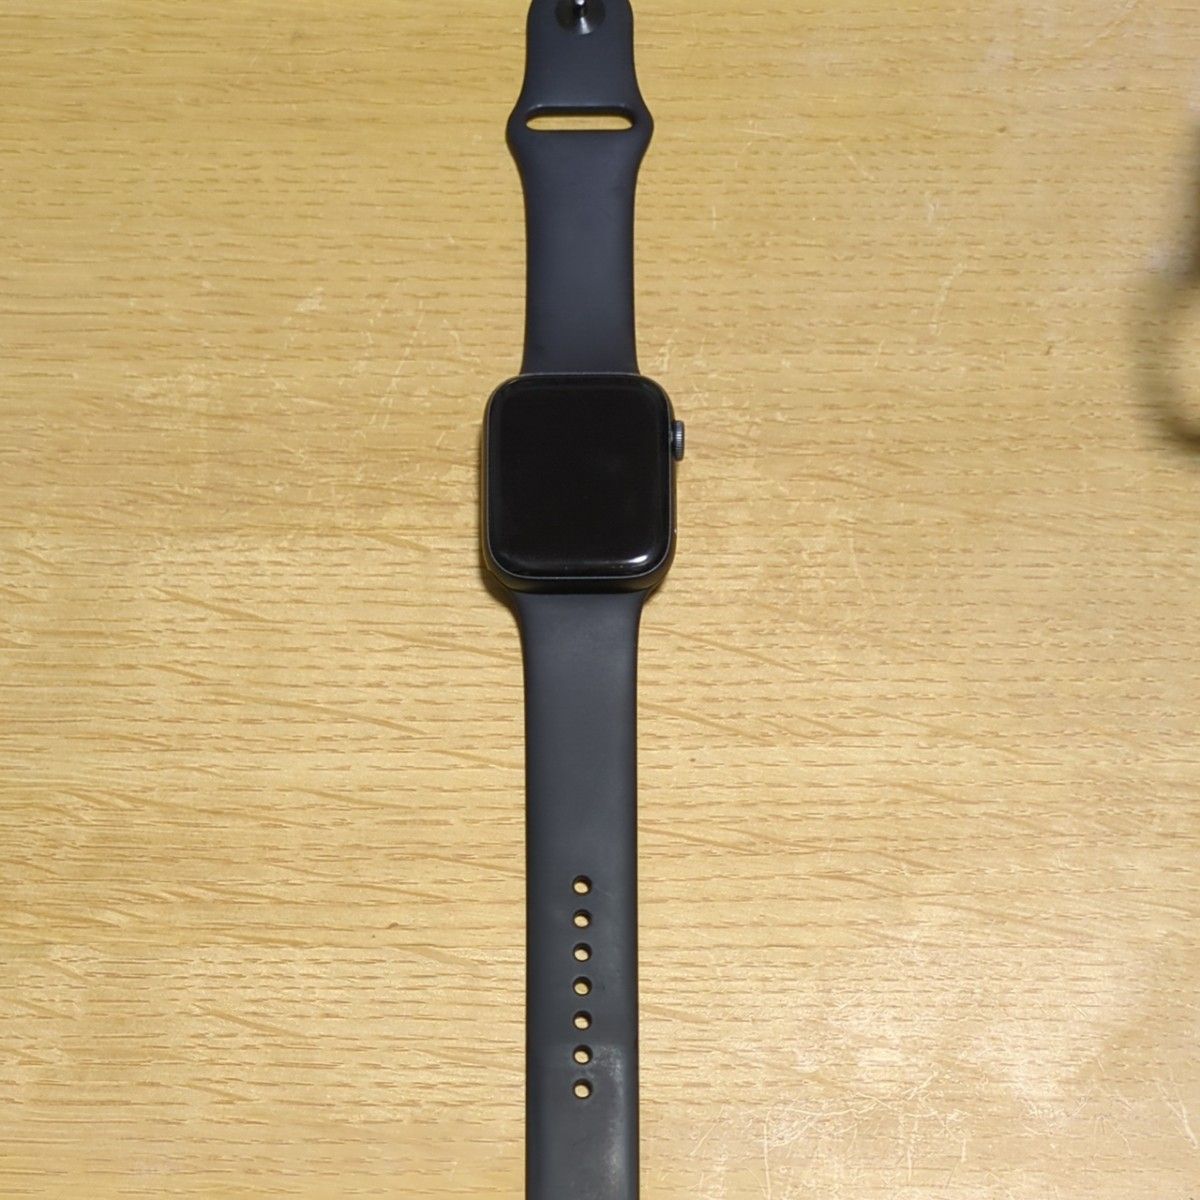 Apple Watch Series 4 GPSモデル 44mm スペースグレイアルミニウムケースとブラックスポーツバンド